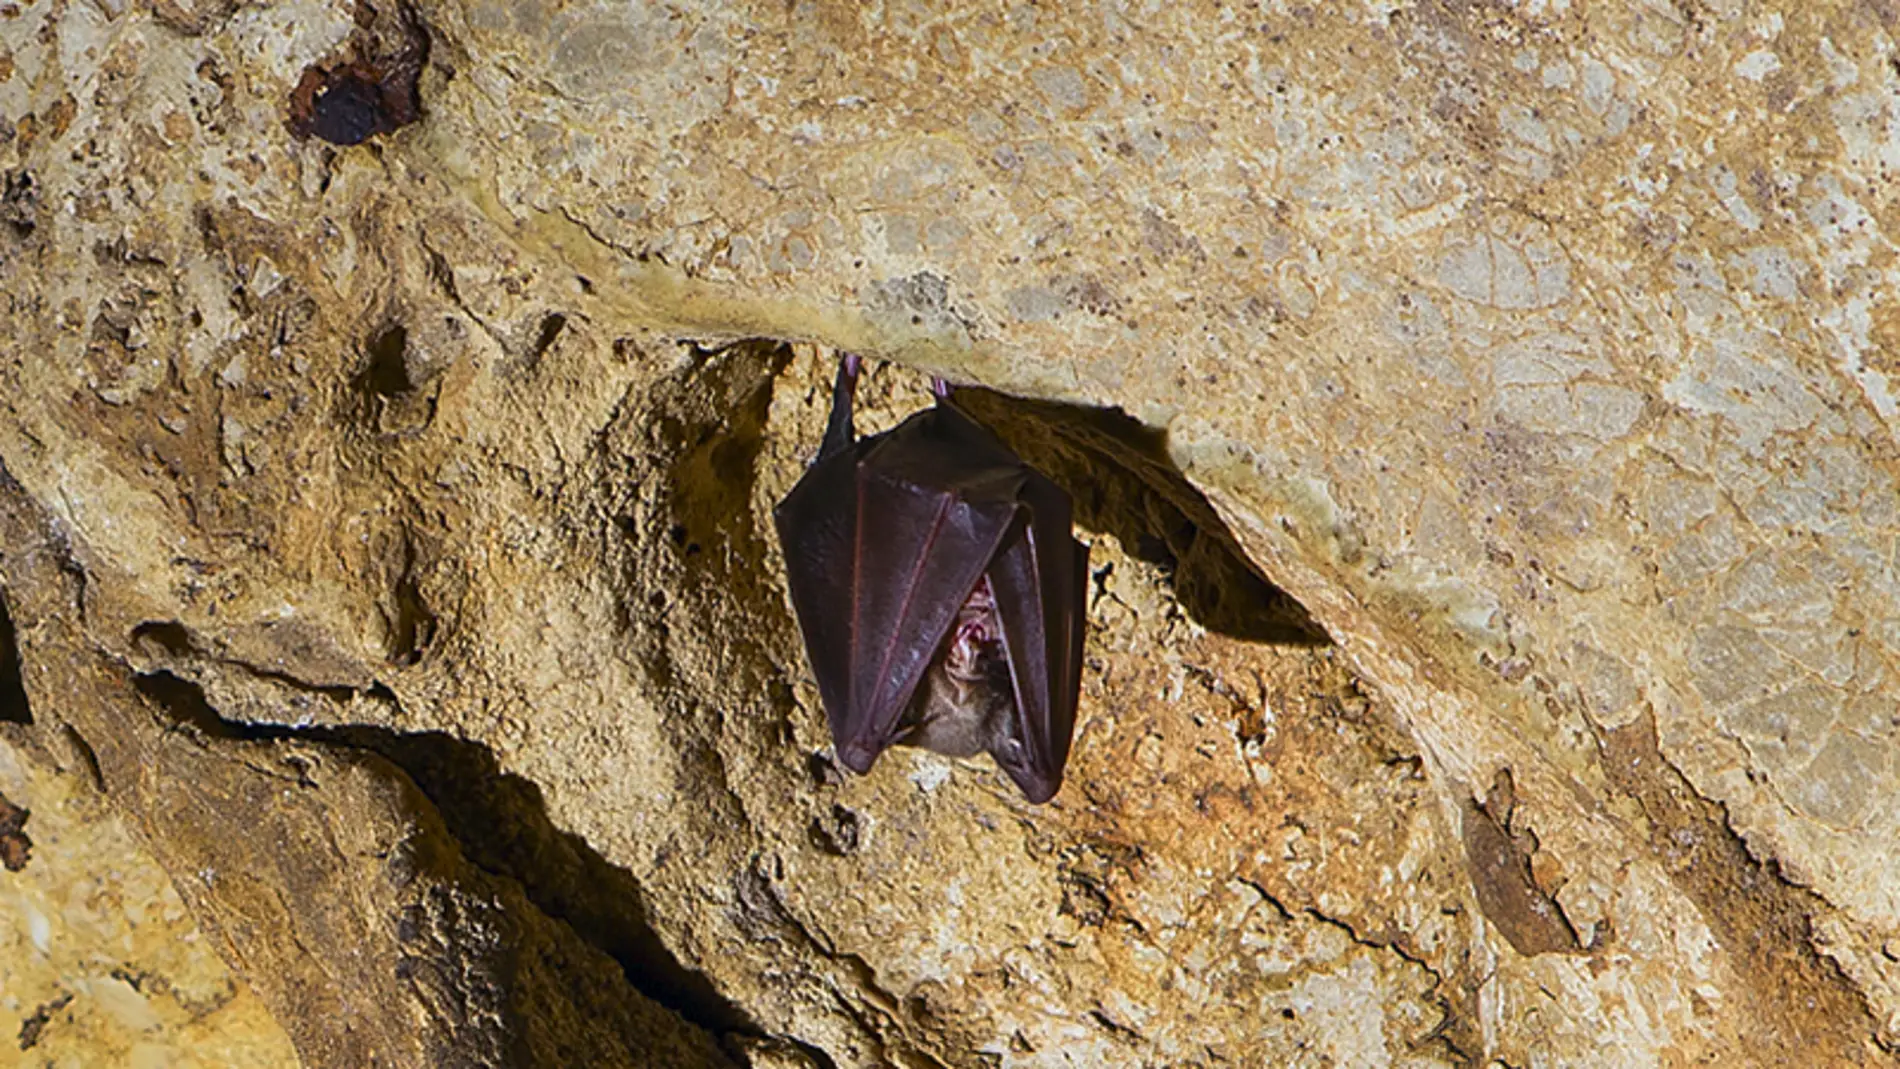  Cueva de los murciélagos de Zuheros 